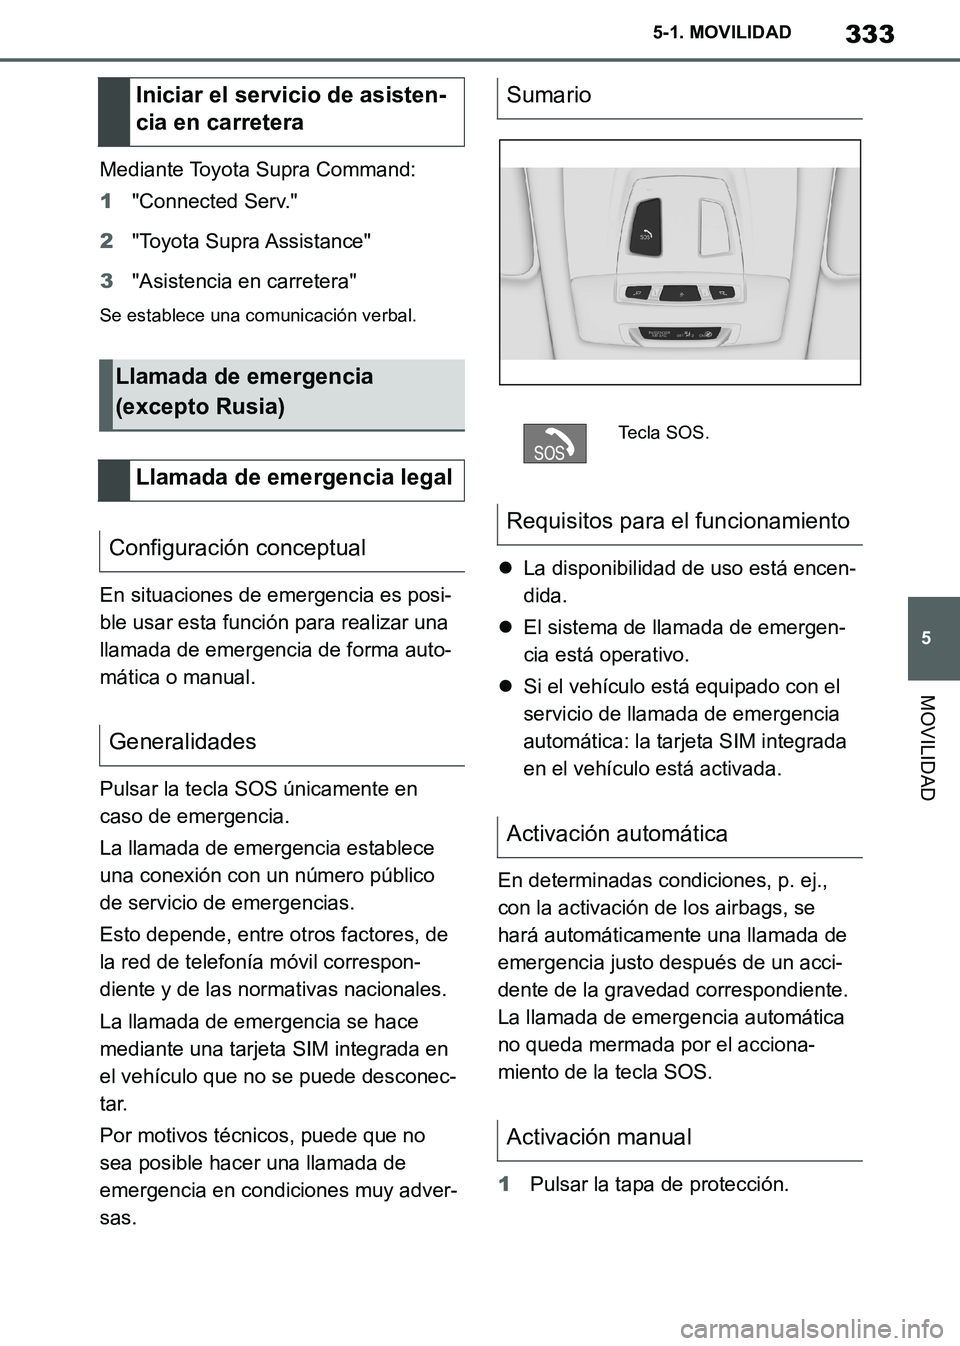 TOYOTA SUPRA 2019  Manuale de Empleo (in Spanish) 333
5
Supra Owners Manual_ES
5-1. MOVILIDAD
MOVILIDAD
Mediante Toyota Supra Command:
1"Connected Serv."
2"Toyota Supra Assistance"
3"Asistencia en carretera"
Se establece una comunicación verbal.
En